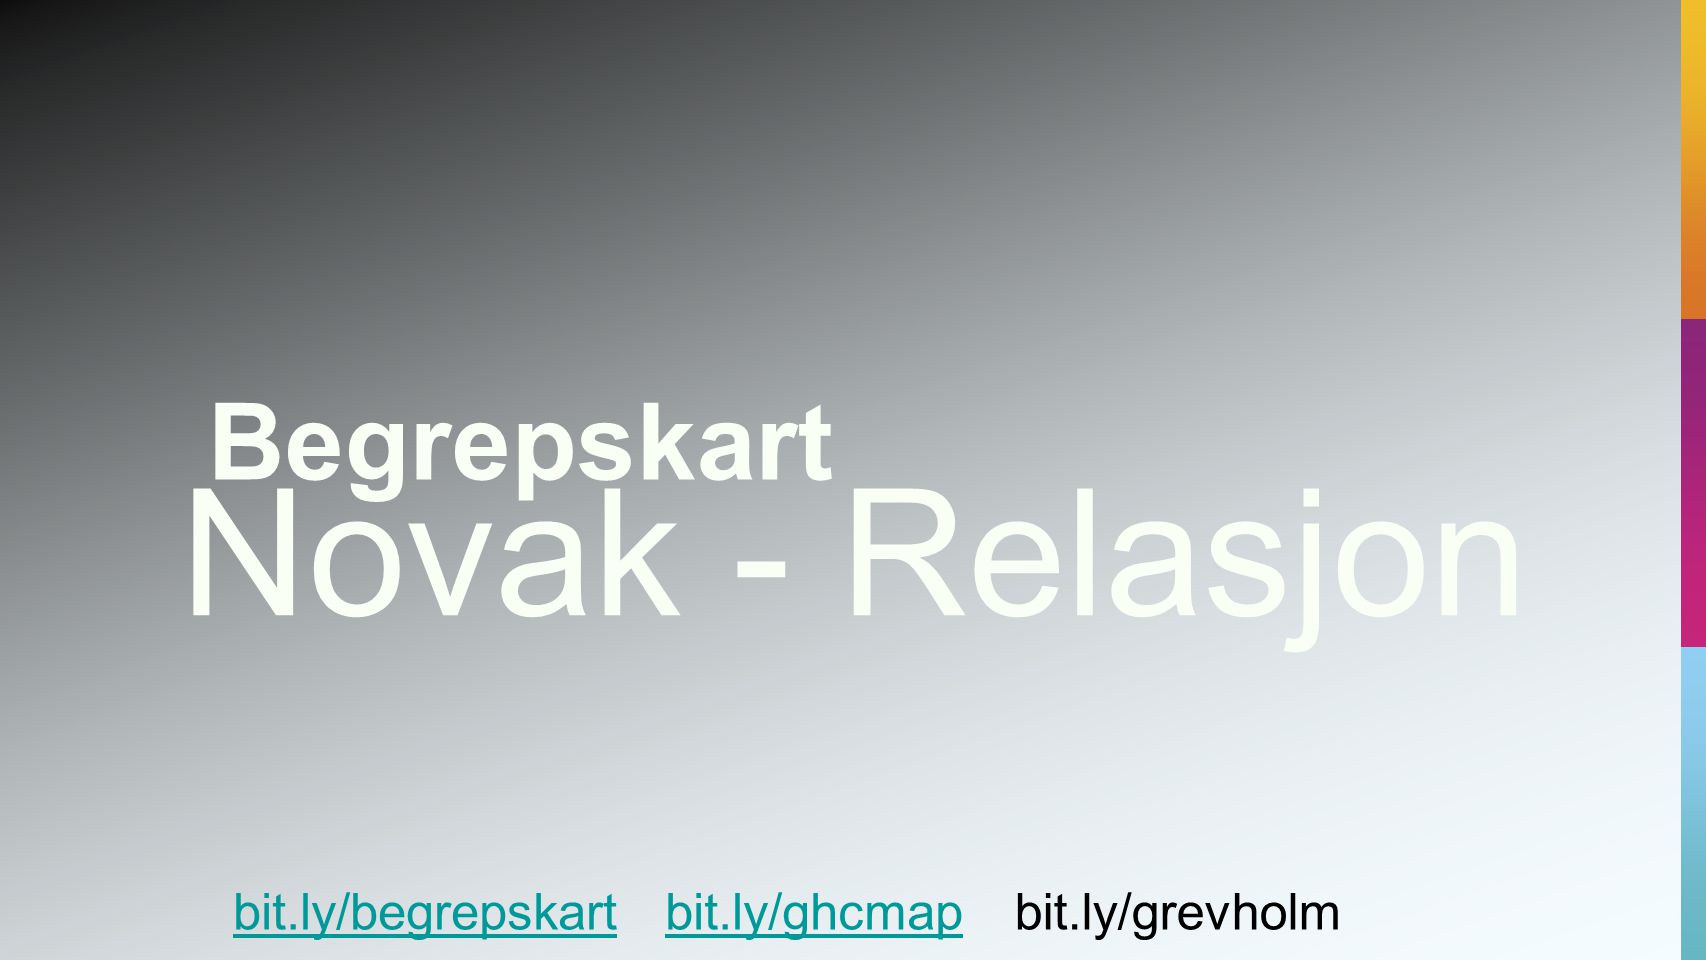 Novak - Relasjon bit.ly/ghcmapbit.ly/grevholmbit.ly/begrepskart